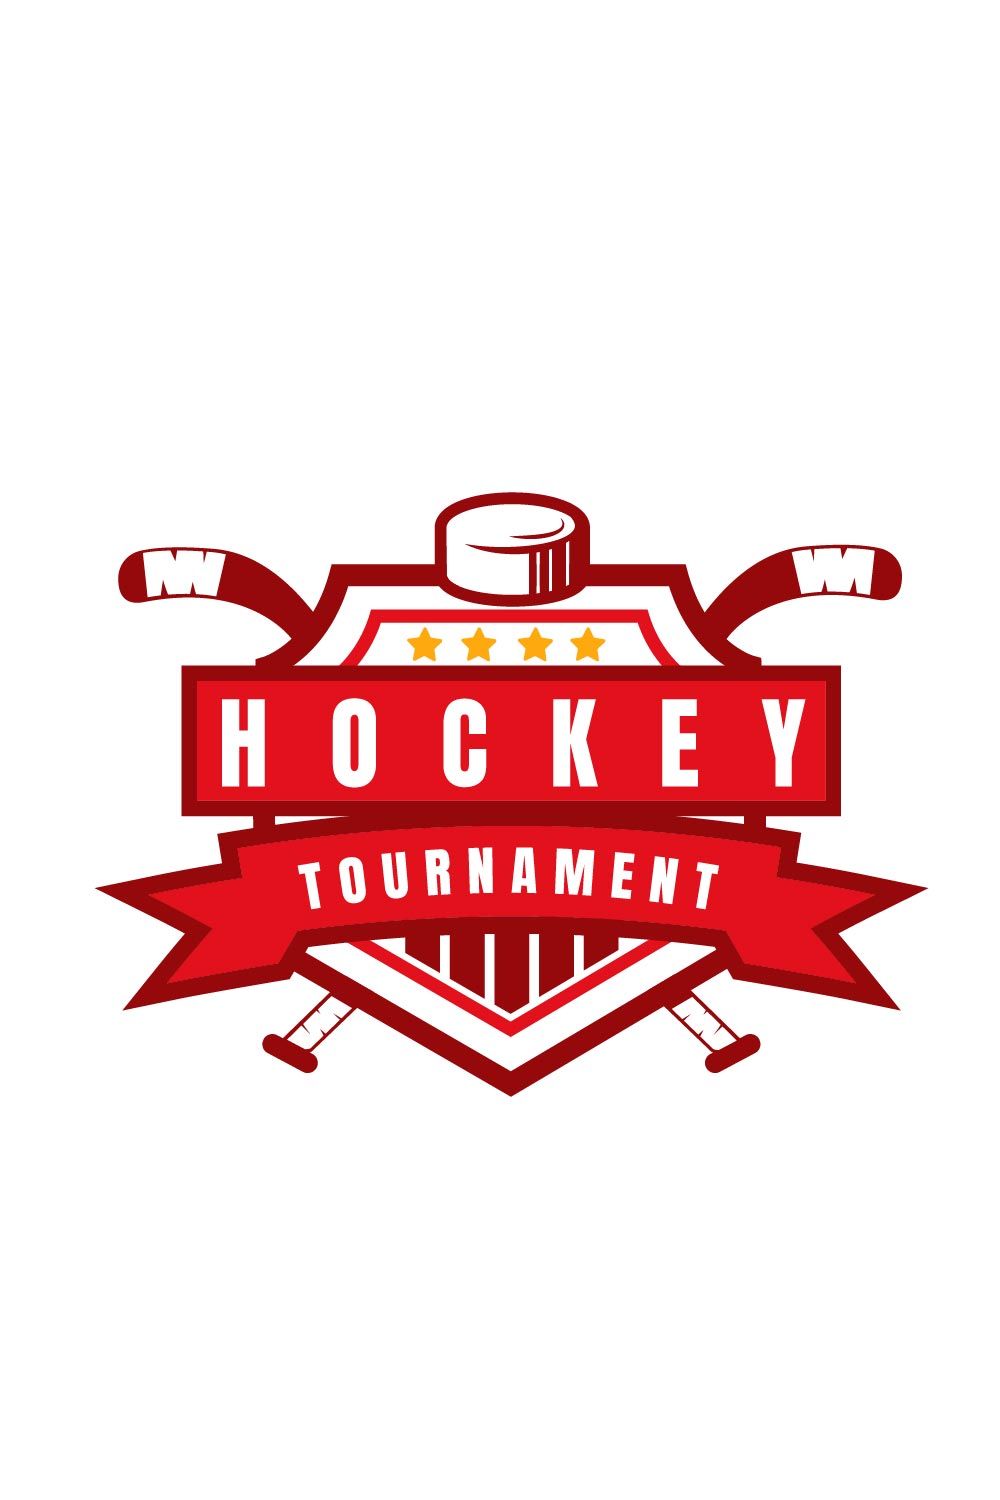 Logo Emblem of Hockey Competition Pinterest image.